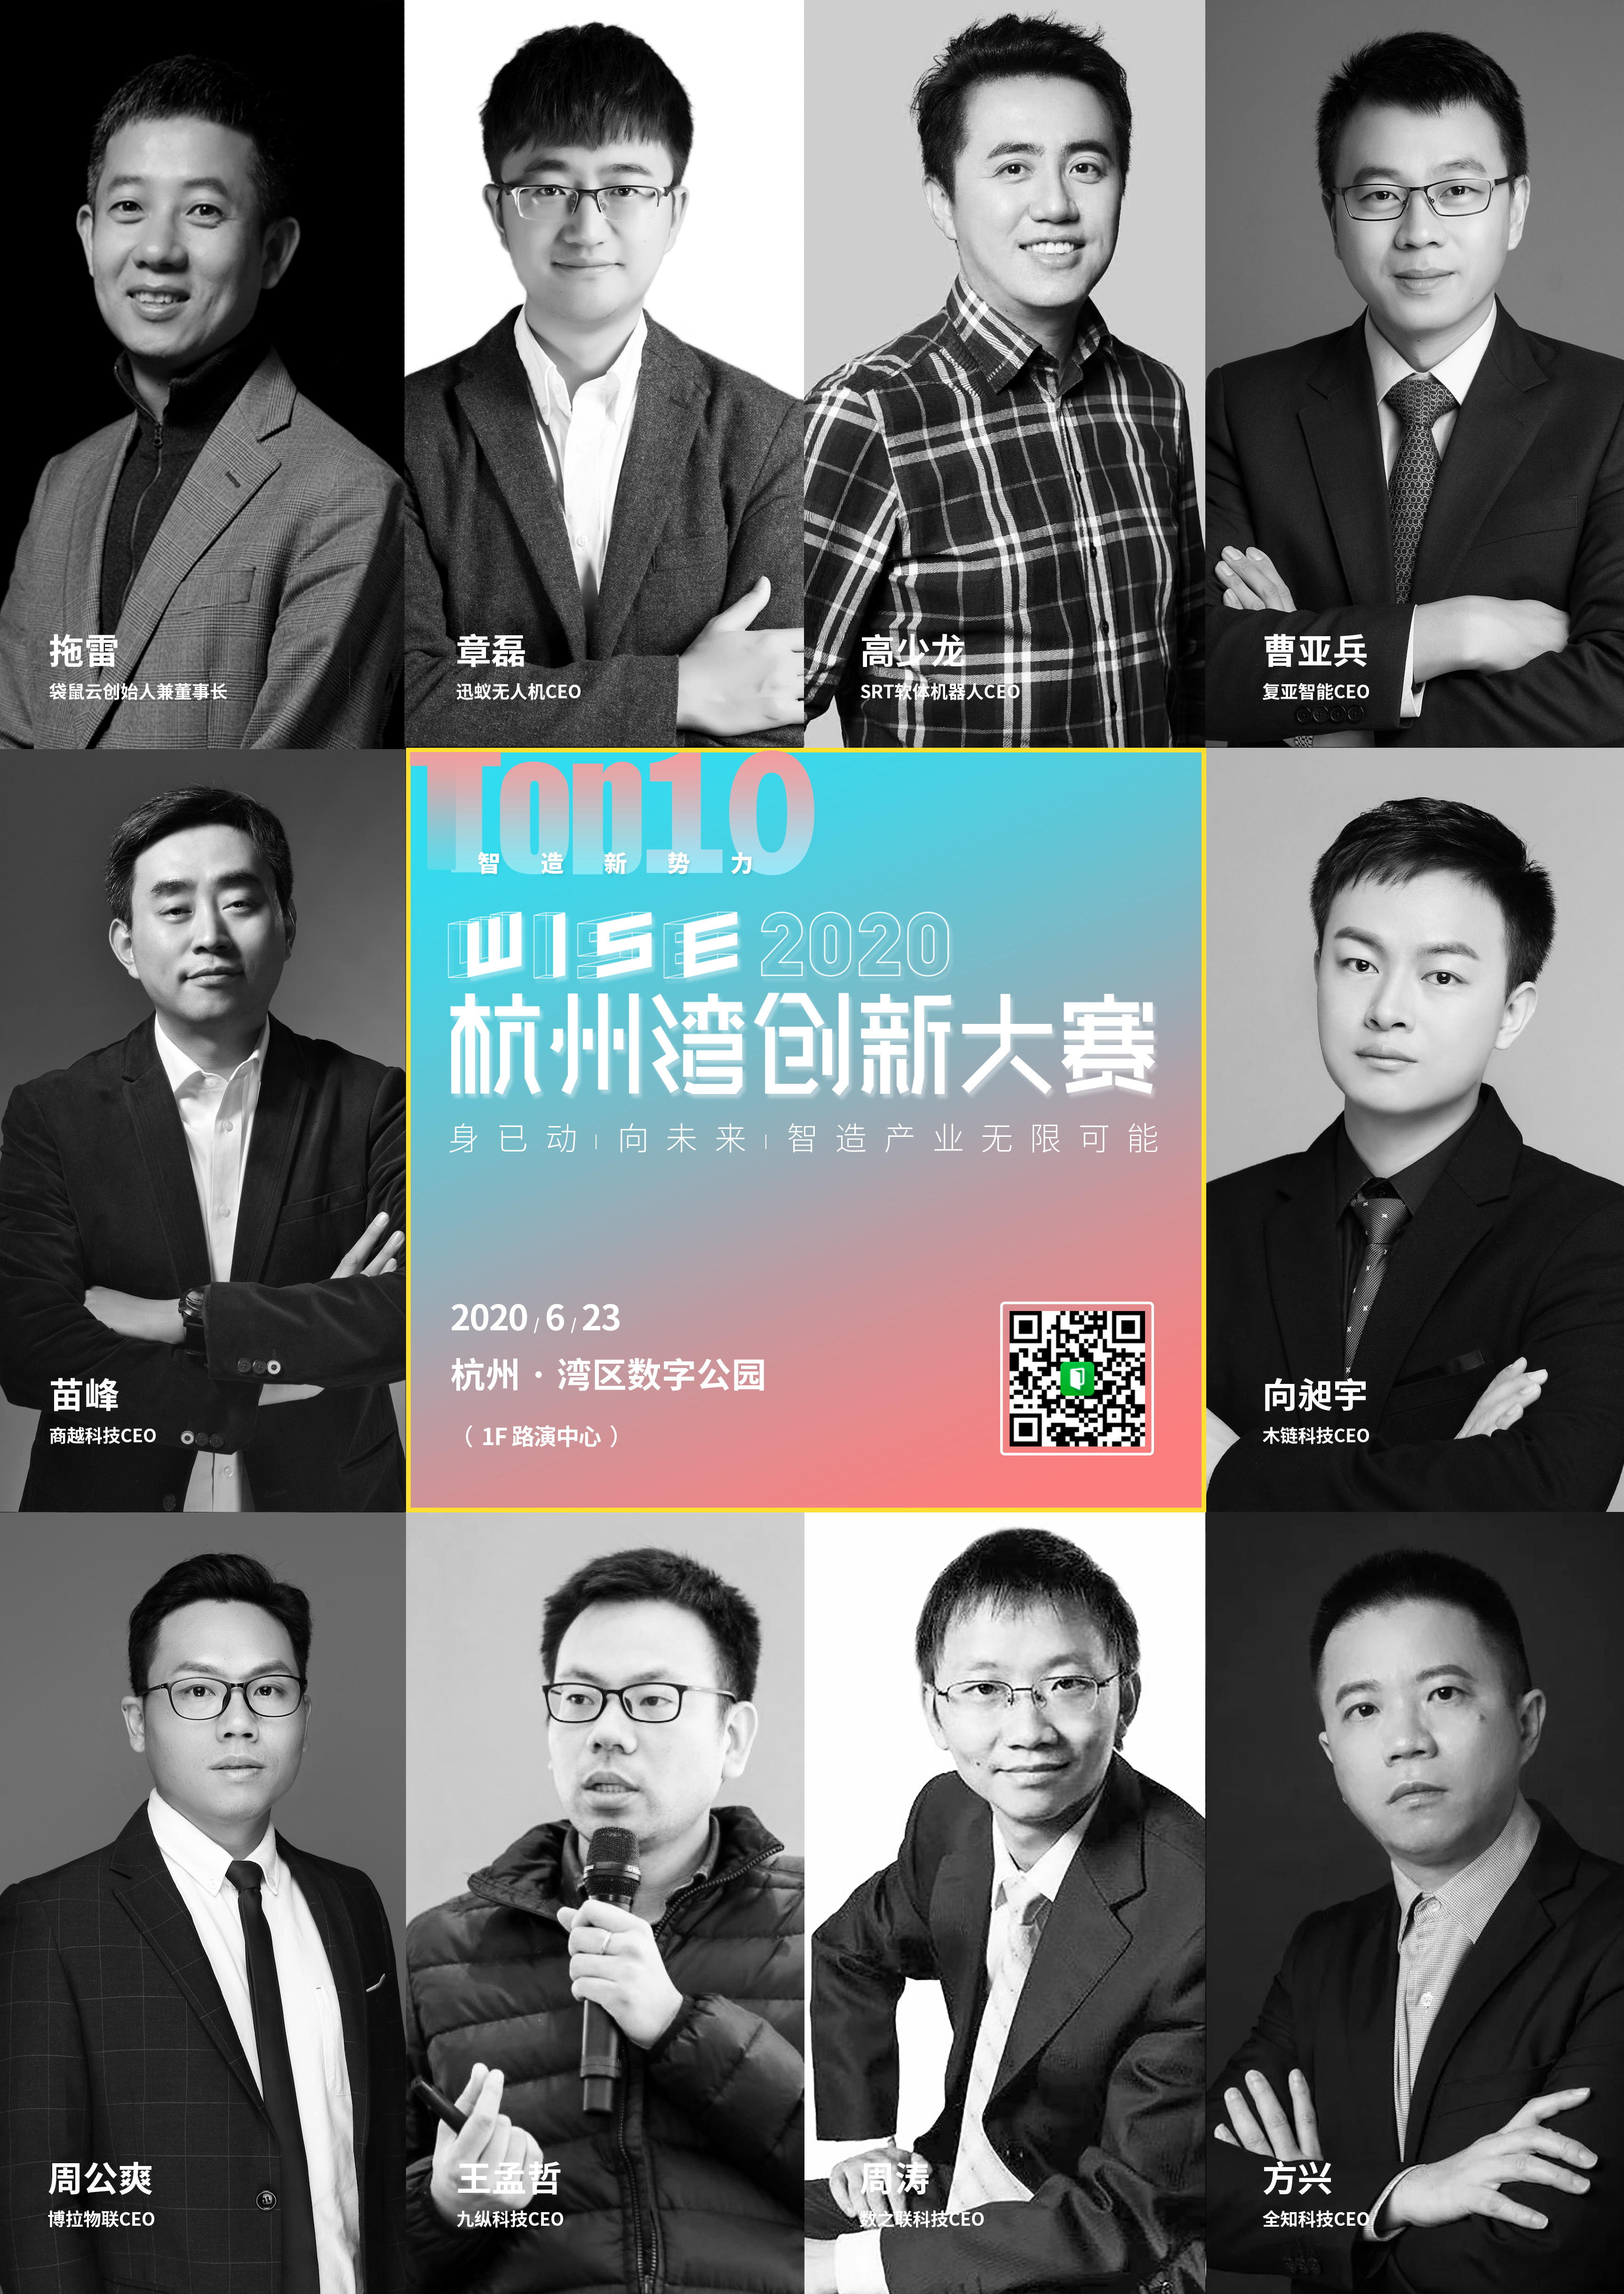 「WISE杭州湾创新大赛」风口中的创业助推器！